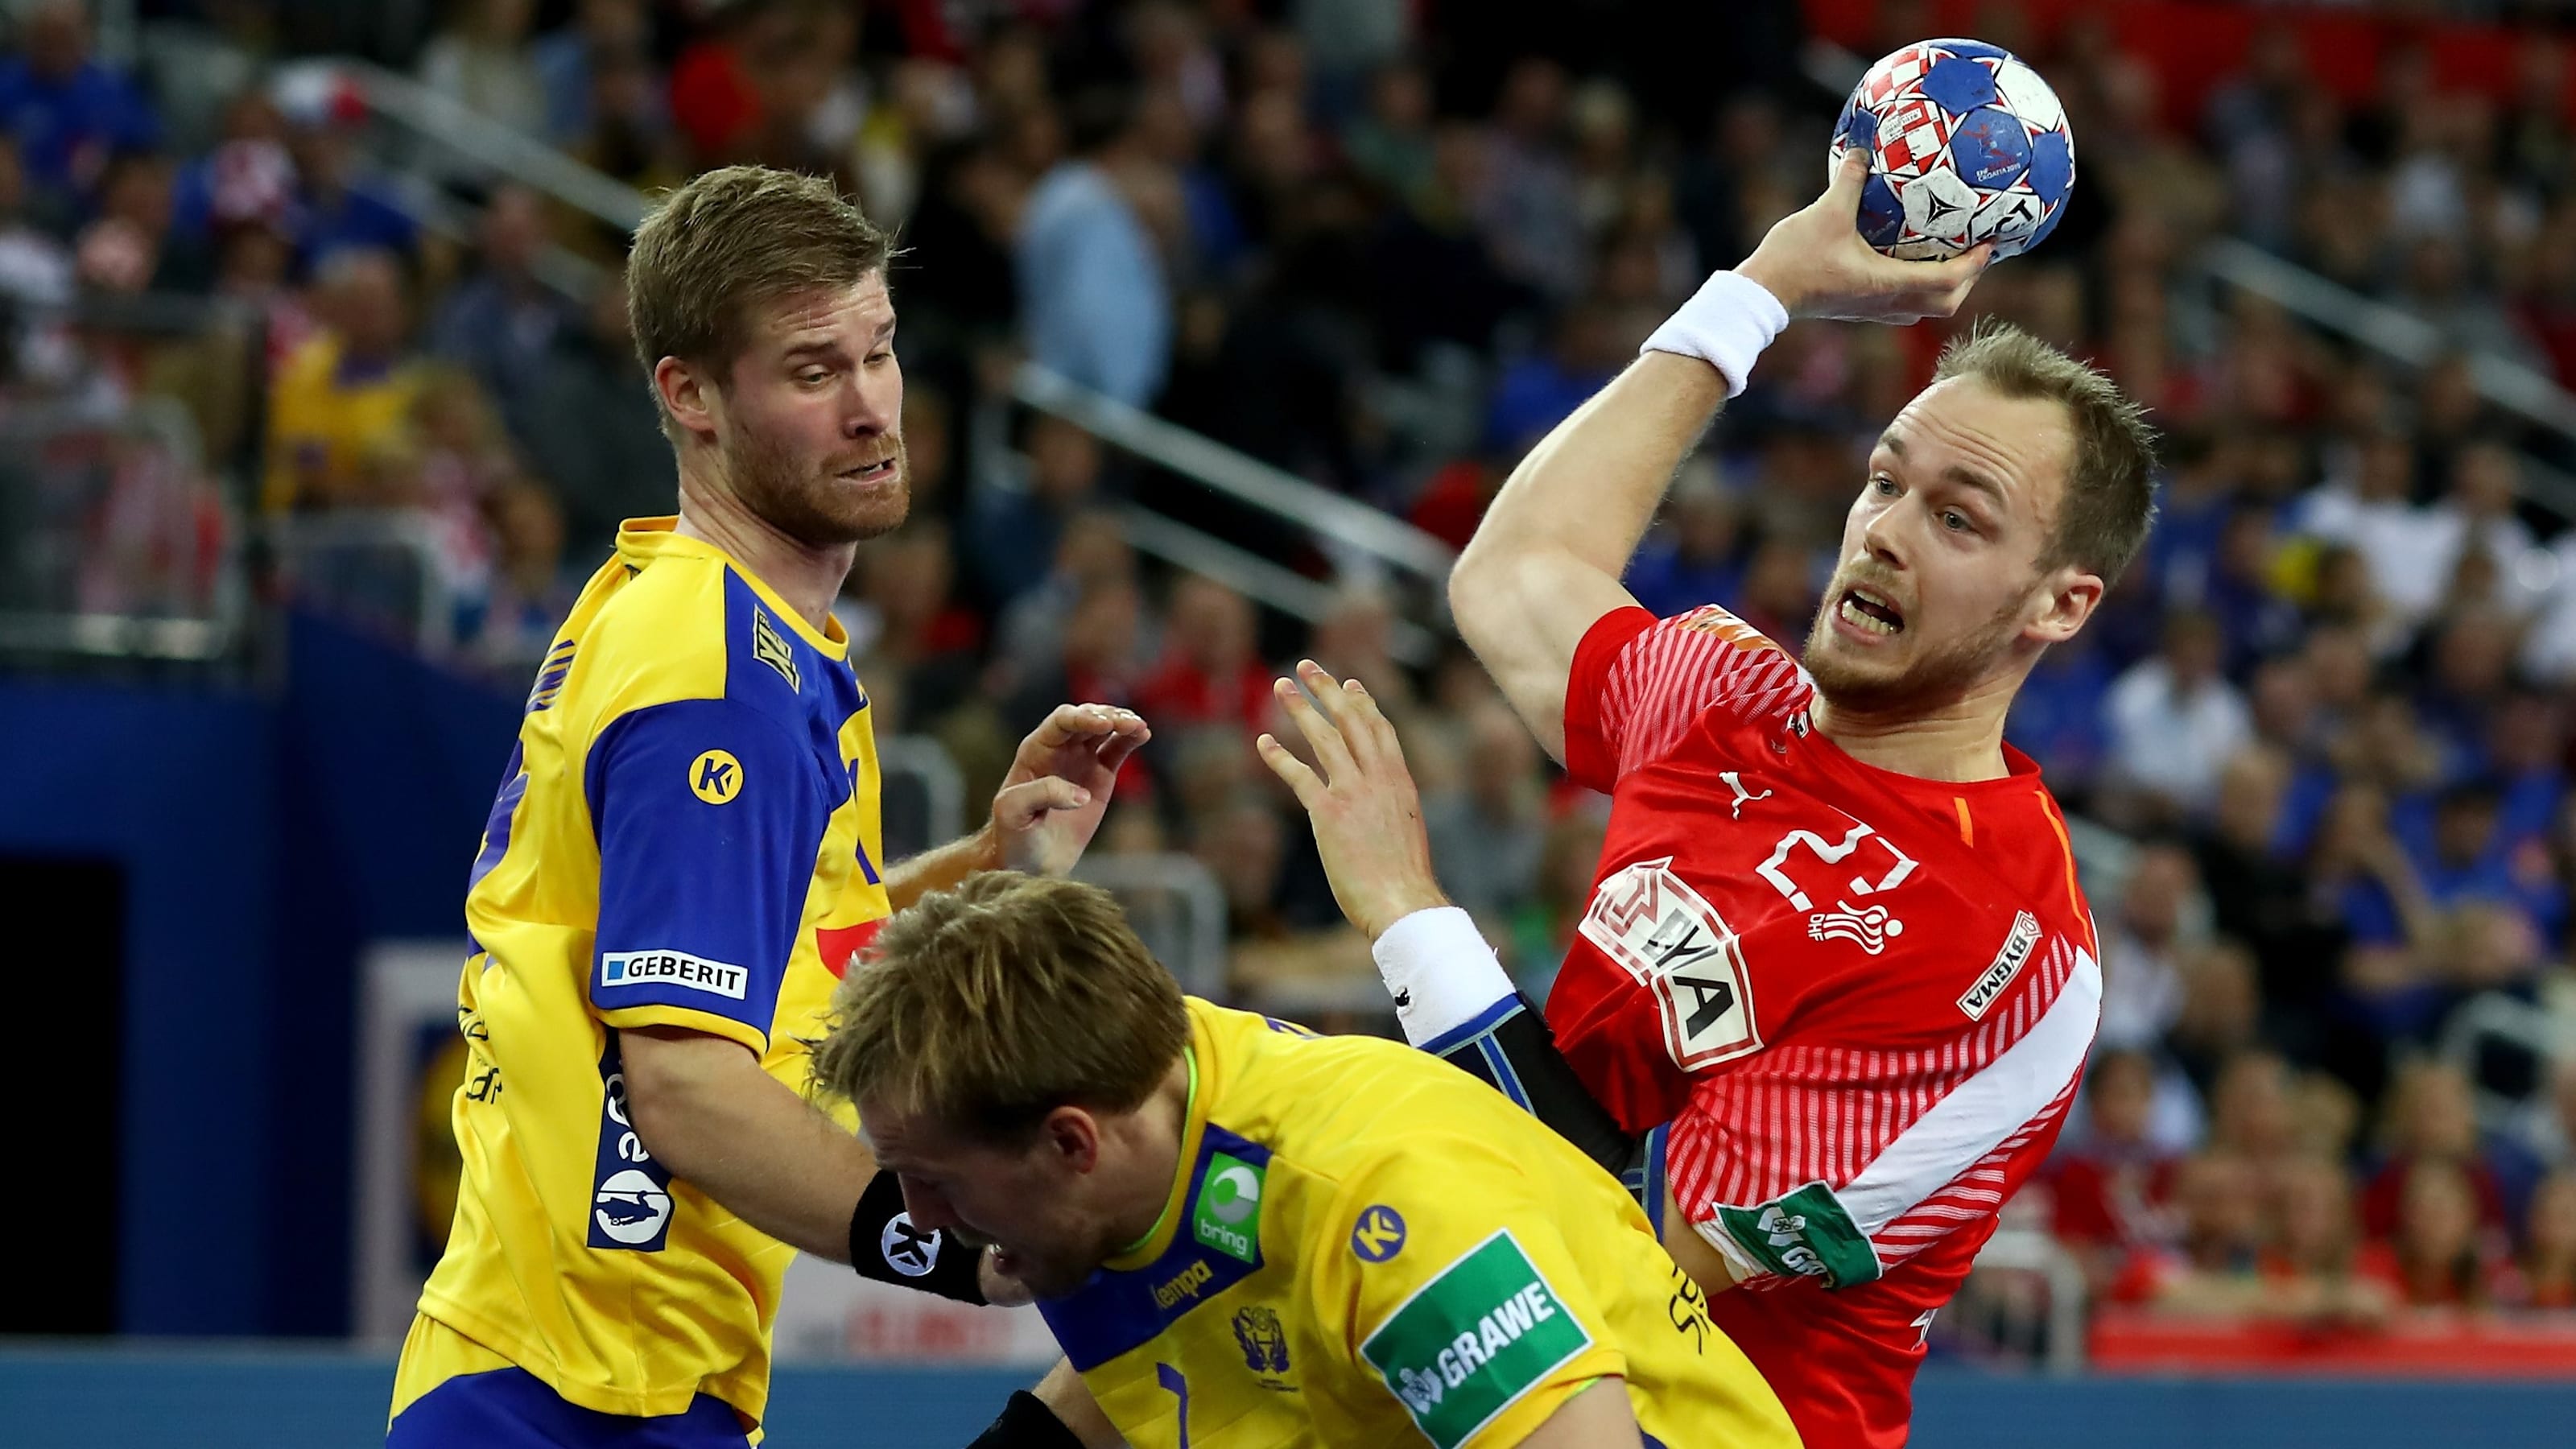 デンマークが連覇達成 日本の最終順位は19位 ハンドボール男子世界選手権